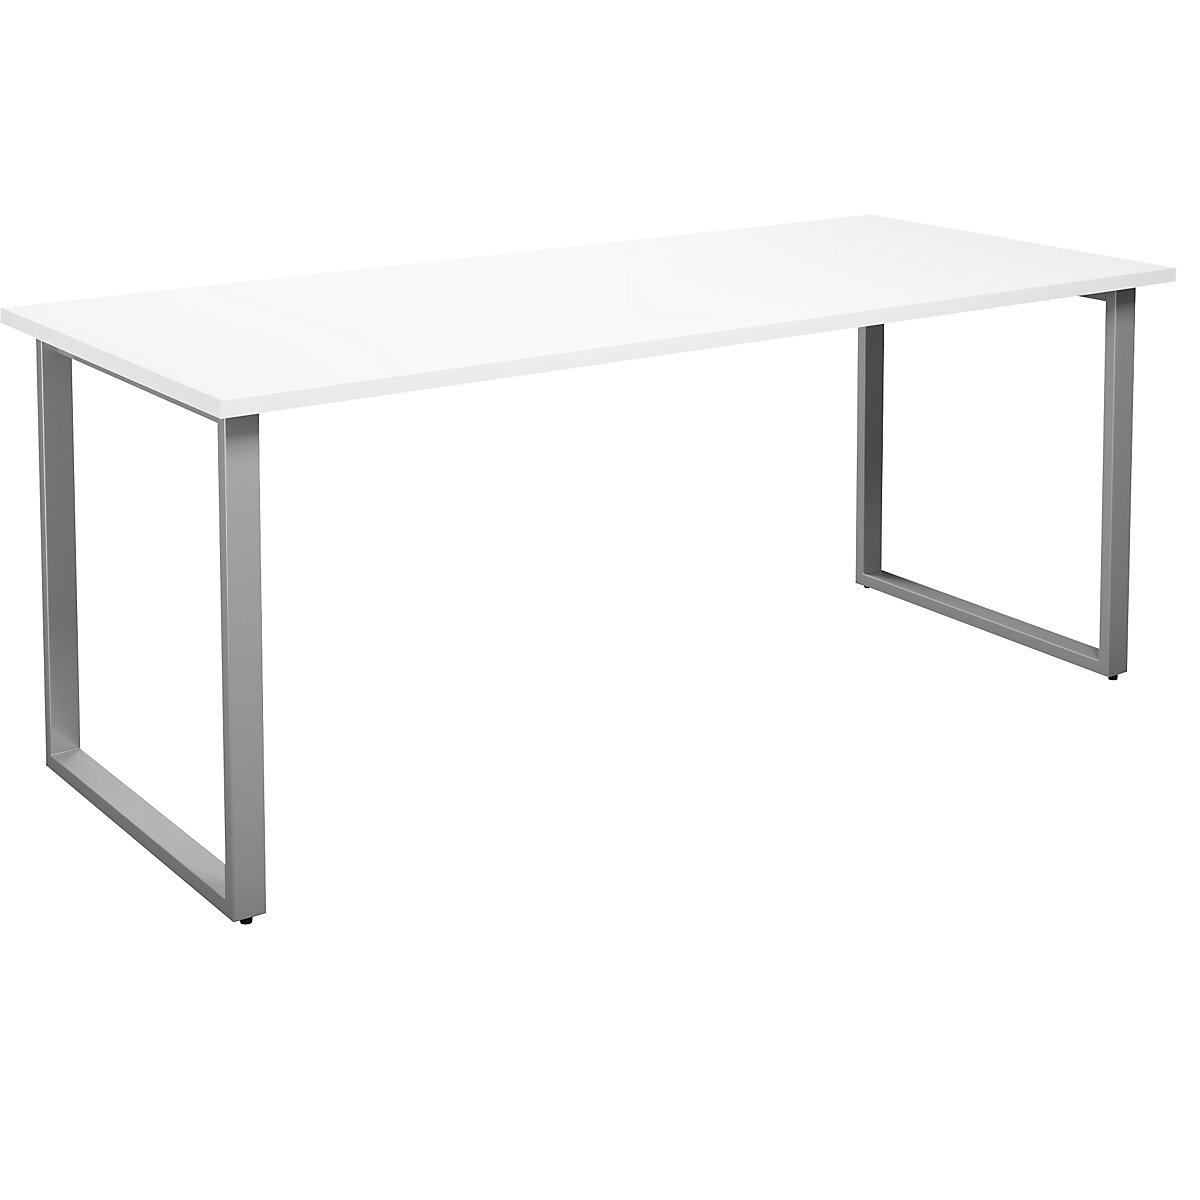 DUO-O multi-purpose desk, straight tabletop, WxD 1800 x 800 mm, white, silver-3